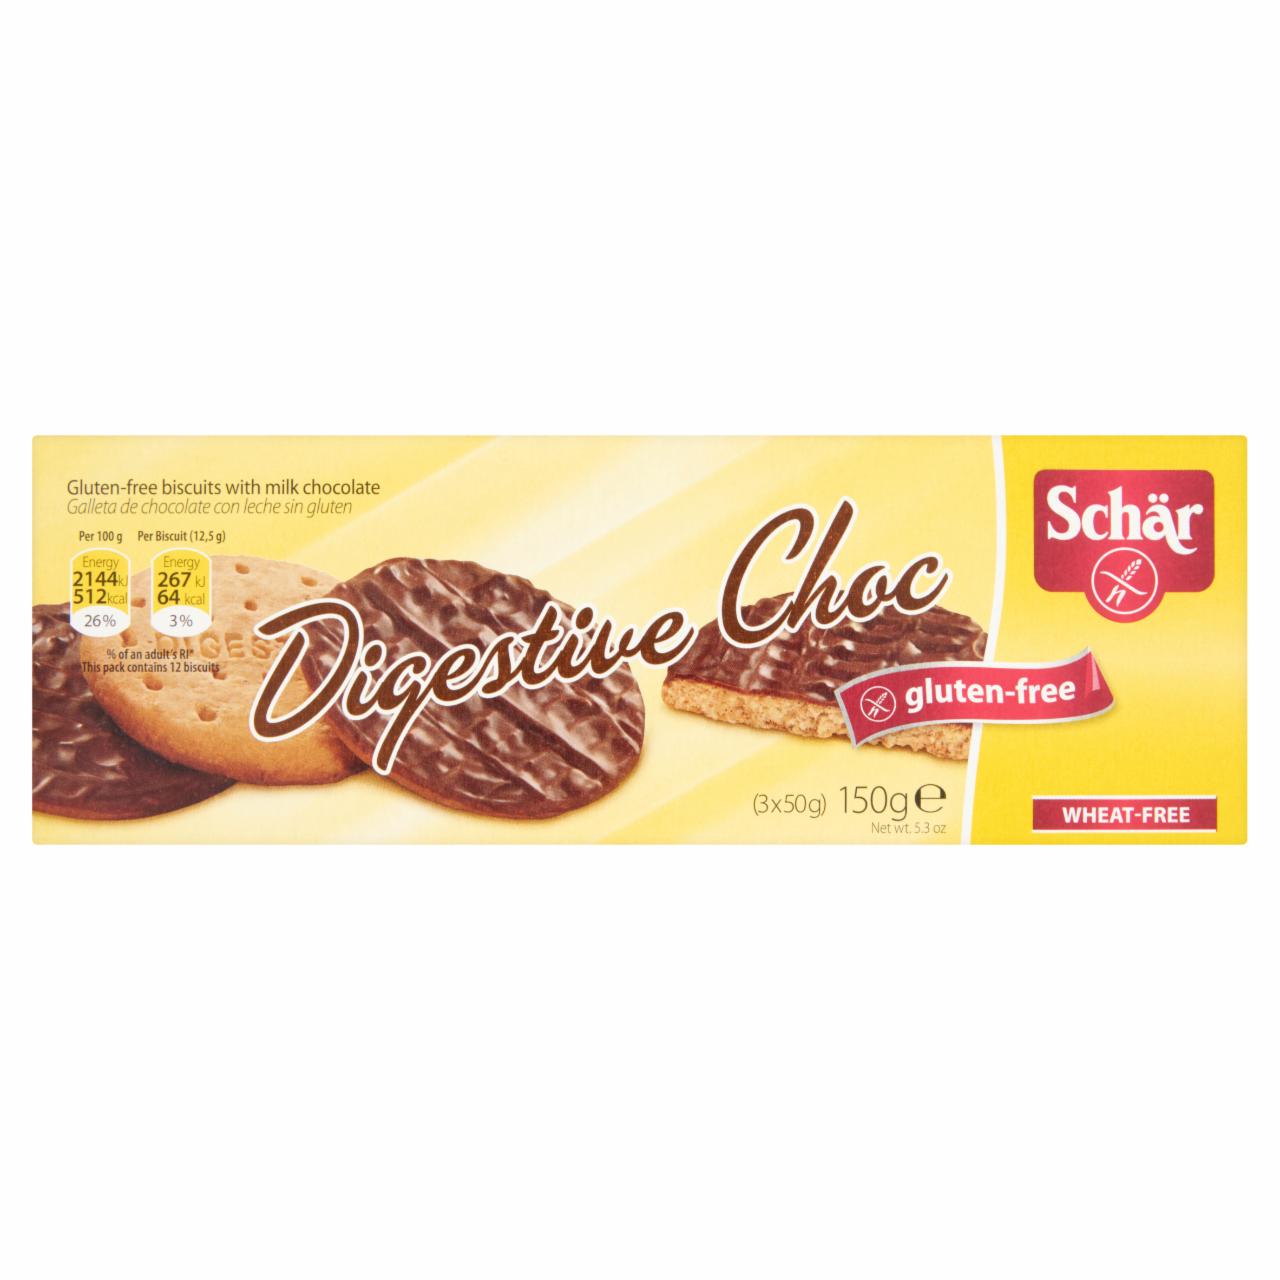 Képek - Schär Digestive Choc gluténmentes keksz tejcsokoládéval 150 g